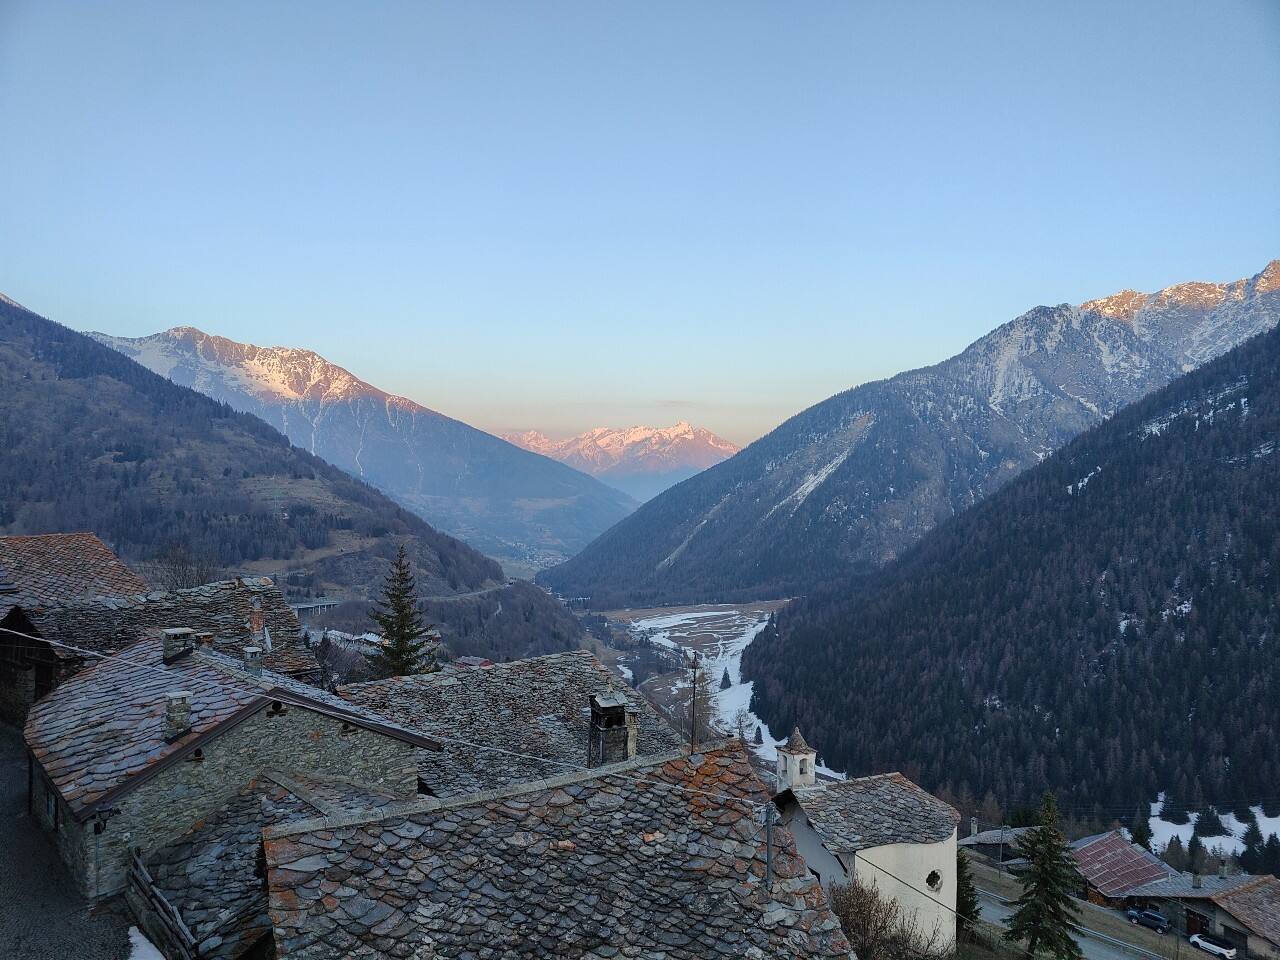 Foto scattata sul Monte Bianco